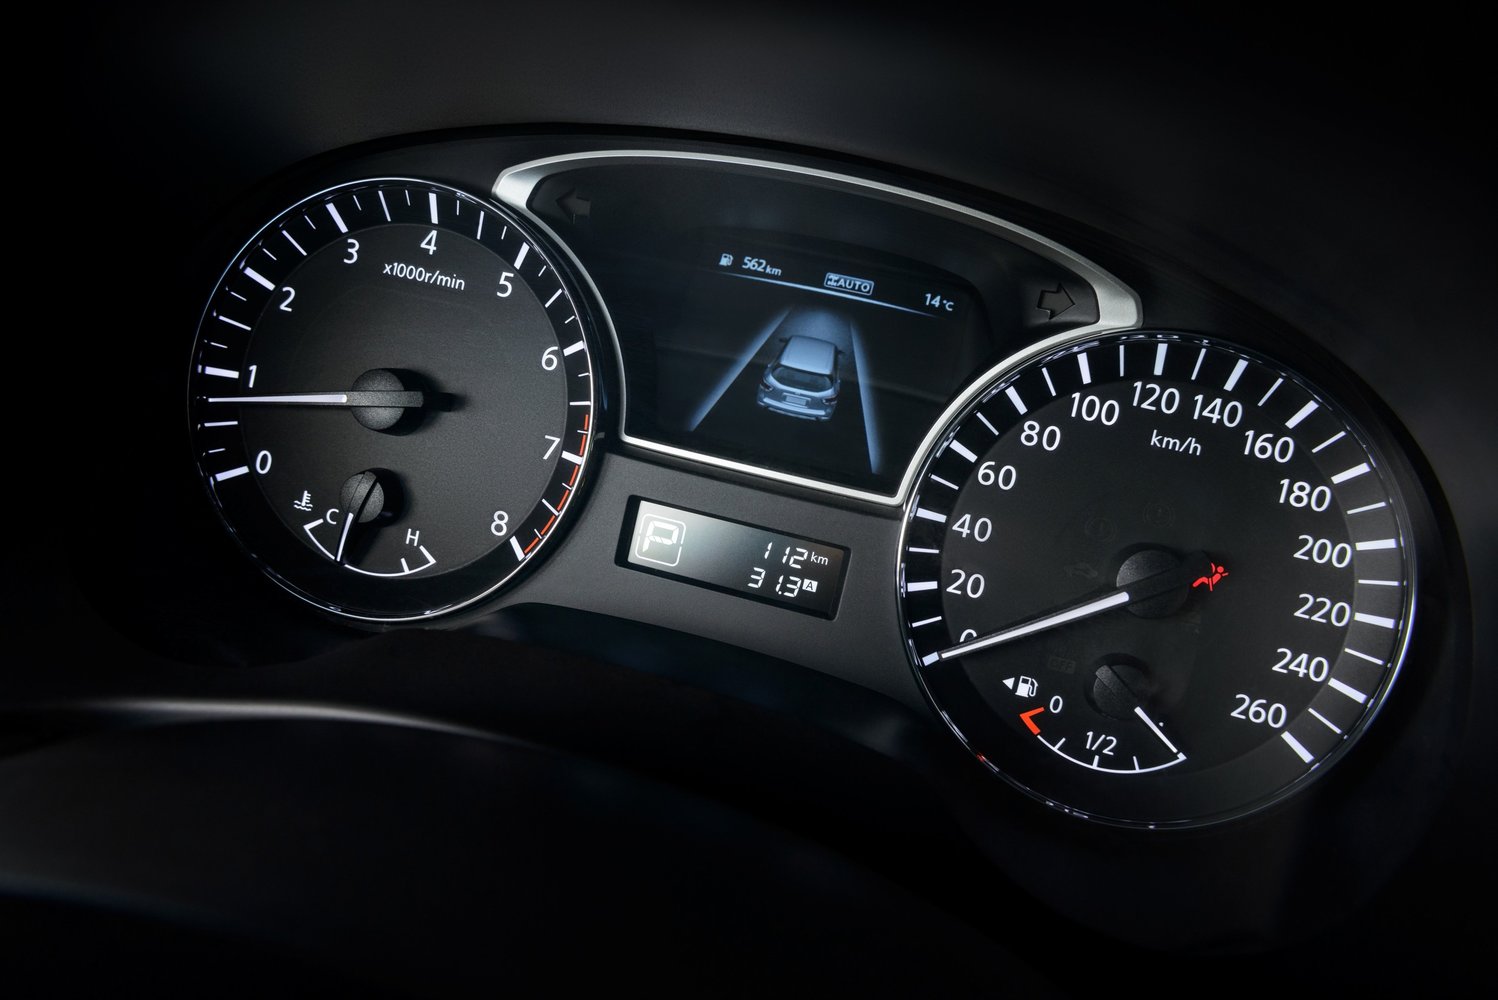 кроссовер Nissan Pathfinder 2014 - 2016г выпуска модификация 3.5 CVT (260 л.с.)